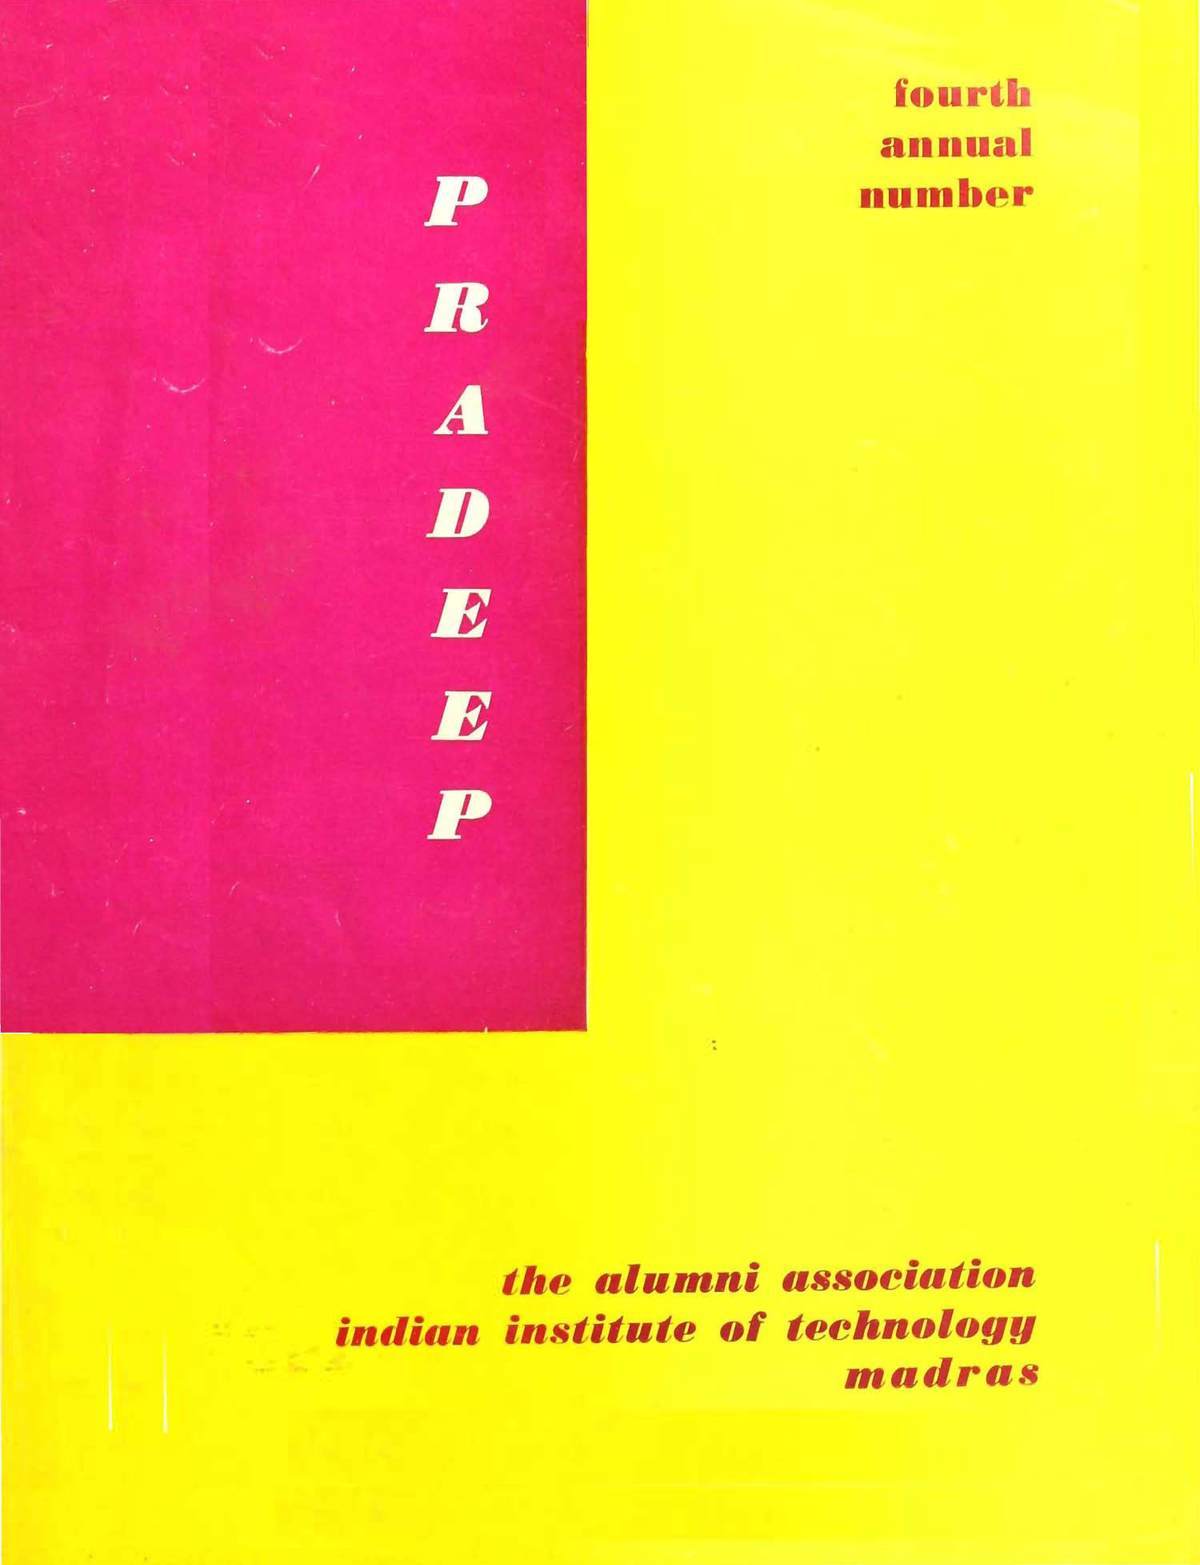 Pradeep Annual Number